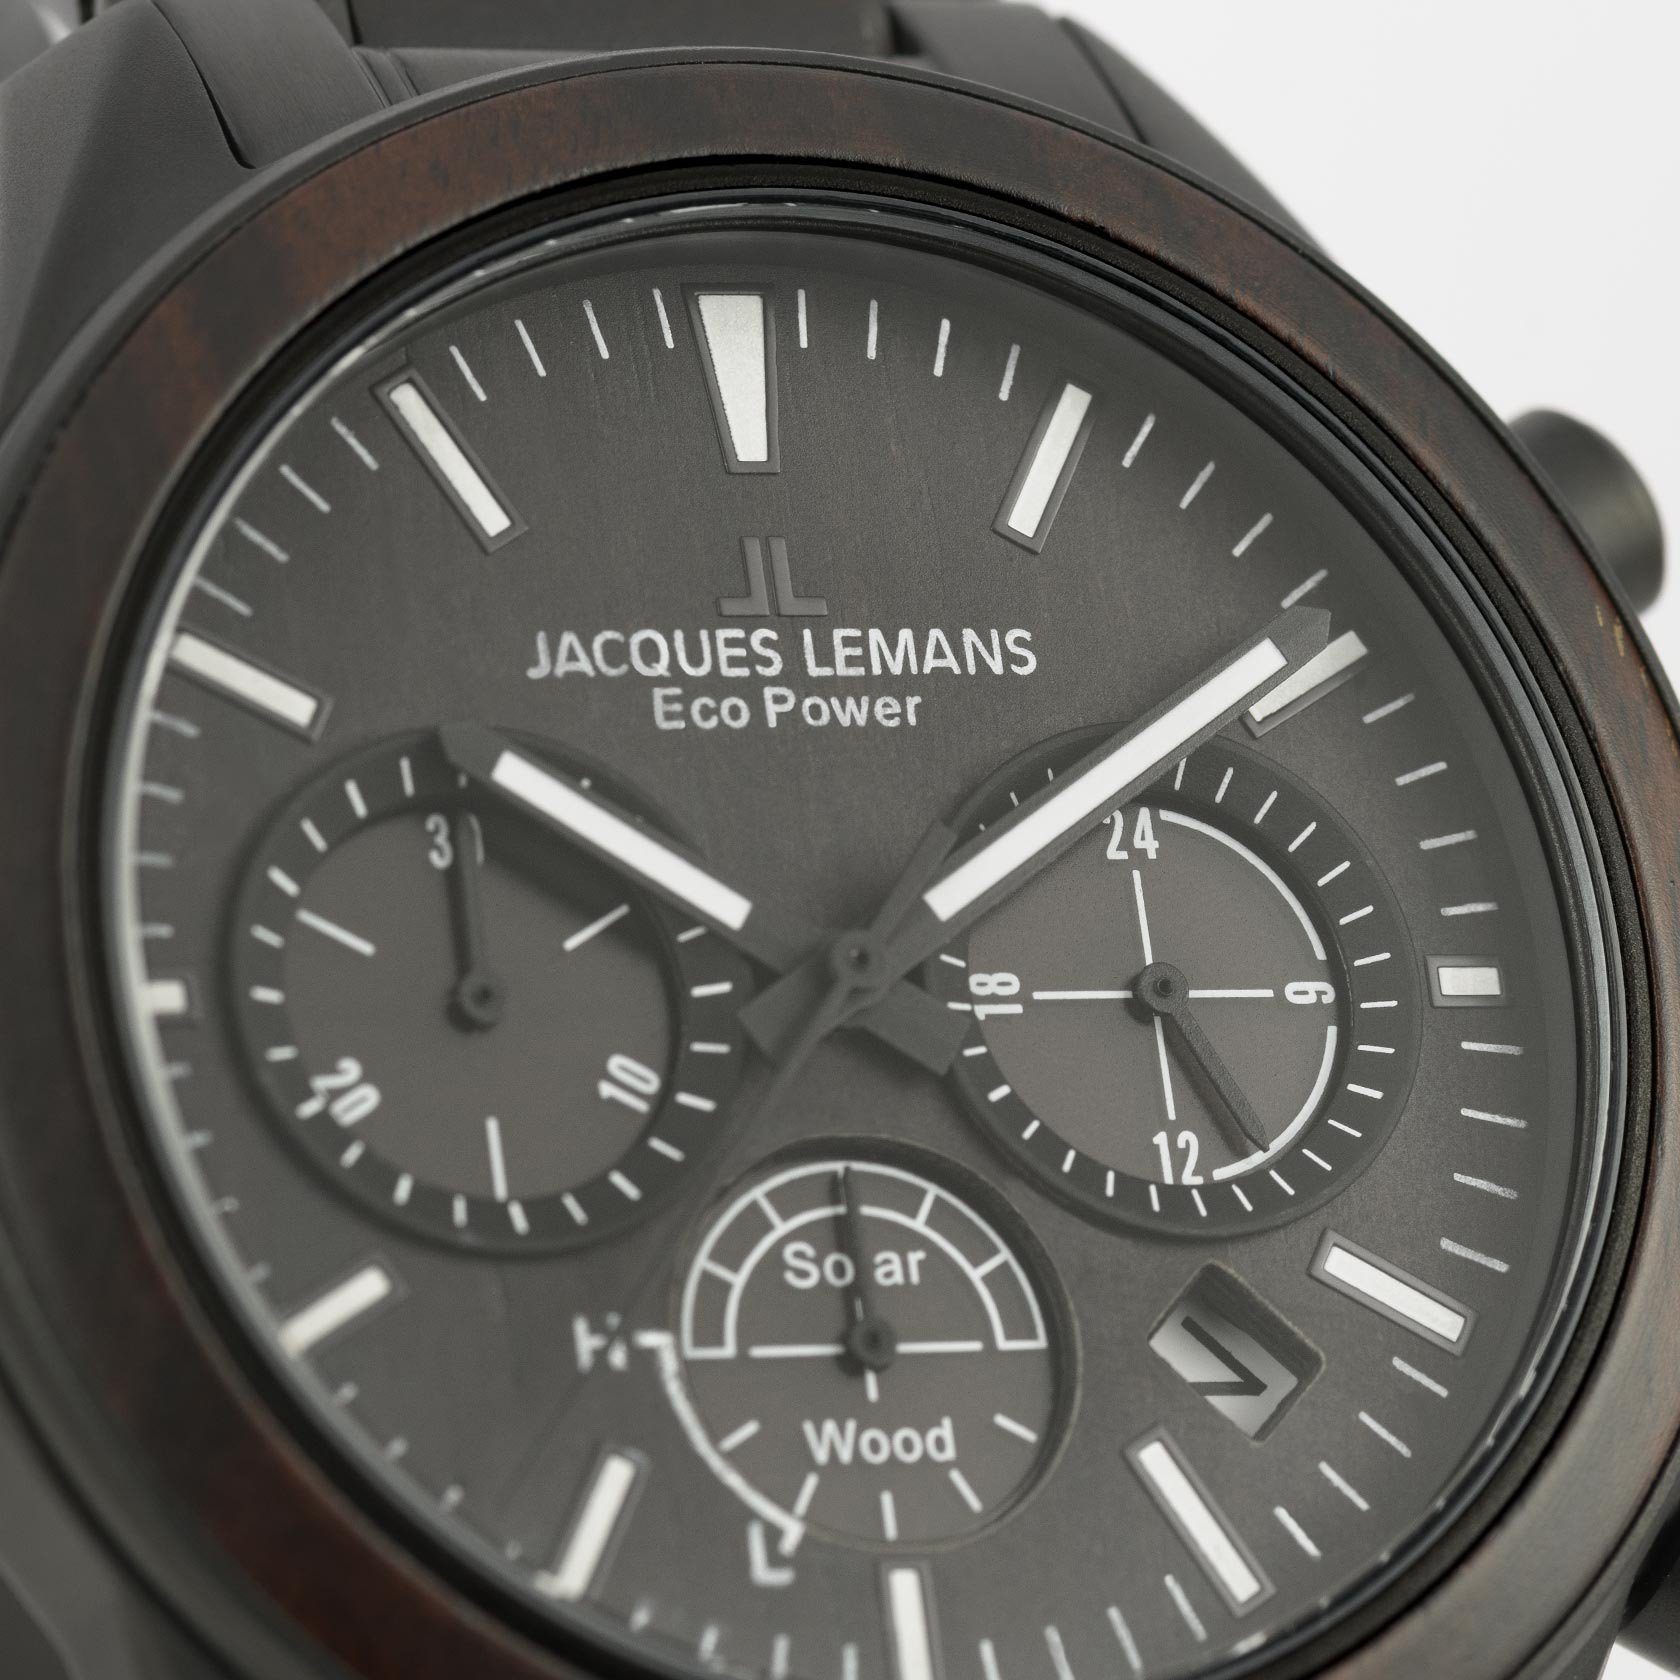 Jacques Lemans Power schwarz 1-2115M Wood, Solar Chronograph Eco